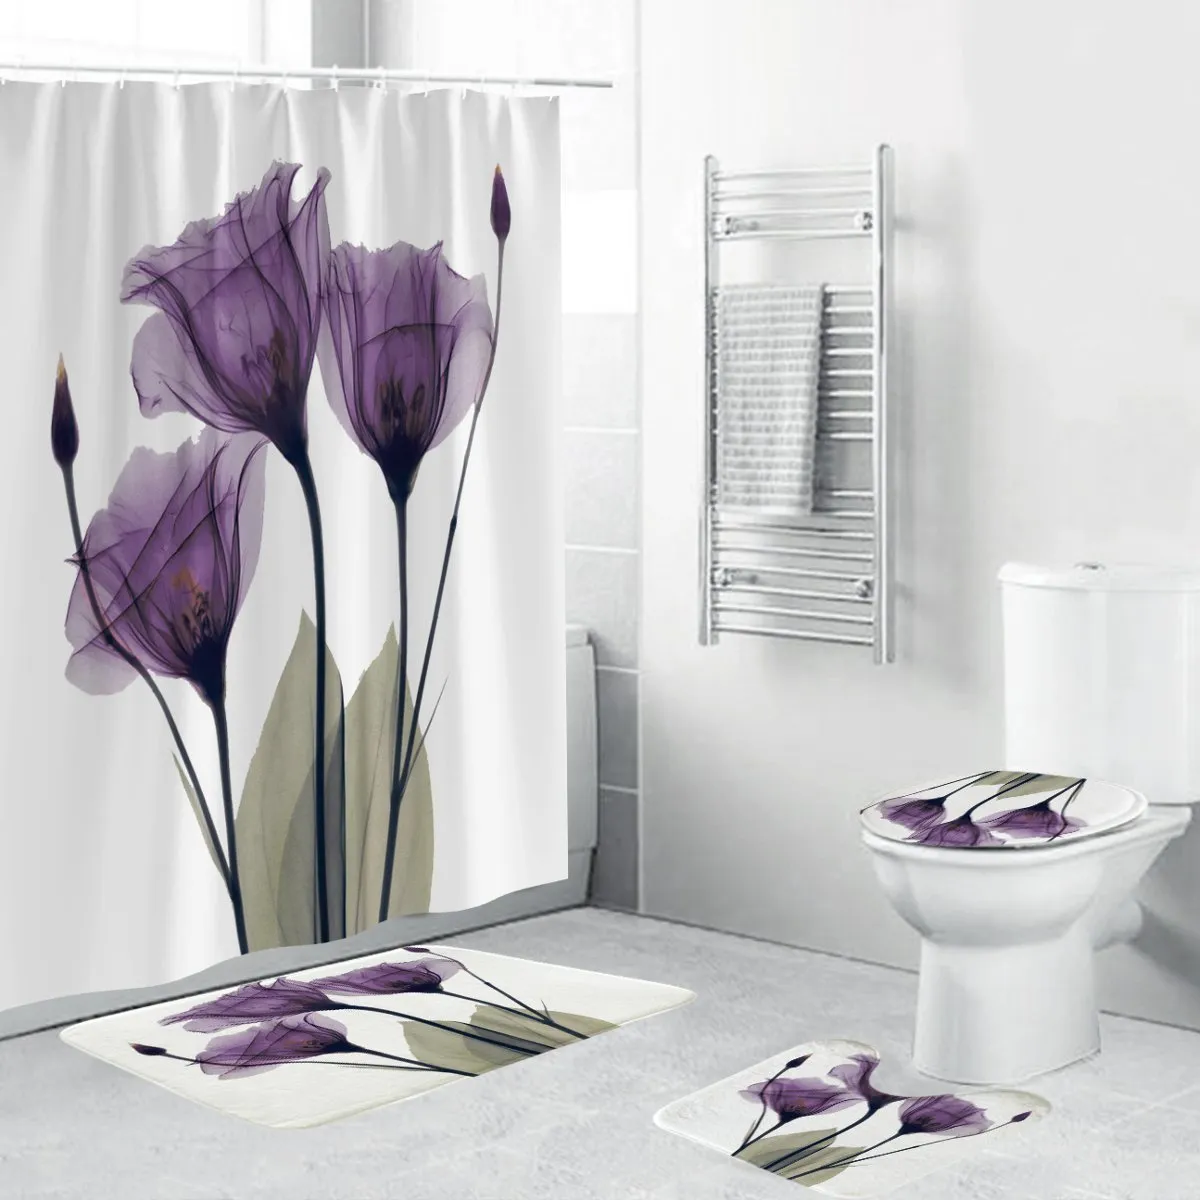 4PCS Flannel Surface Bathroom Mats Shower Curtain Non-Slip Rug Lid Toilet Cover Bath Mat Set Purple Flowers Print Decor Home T200711